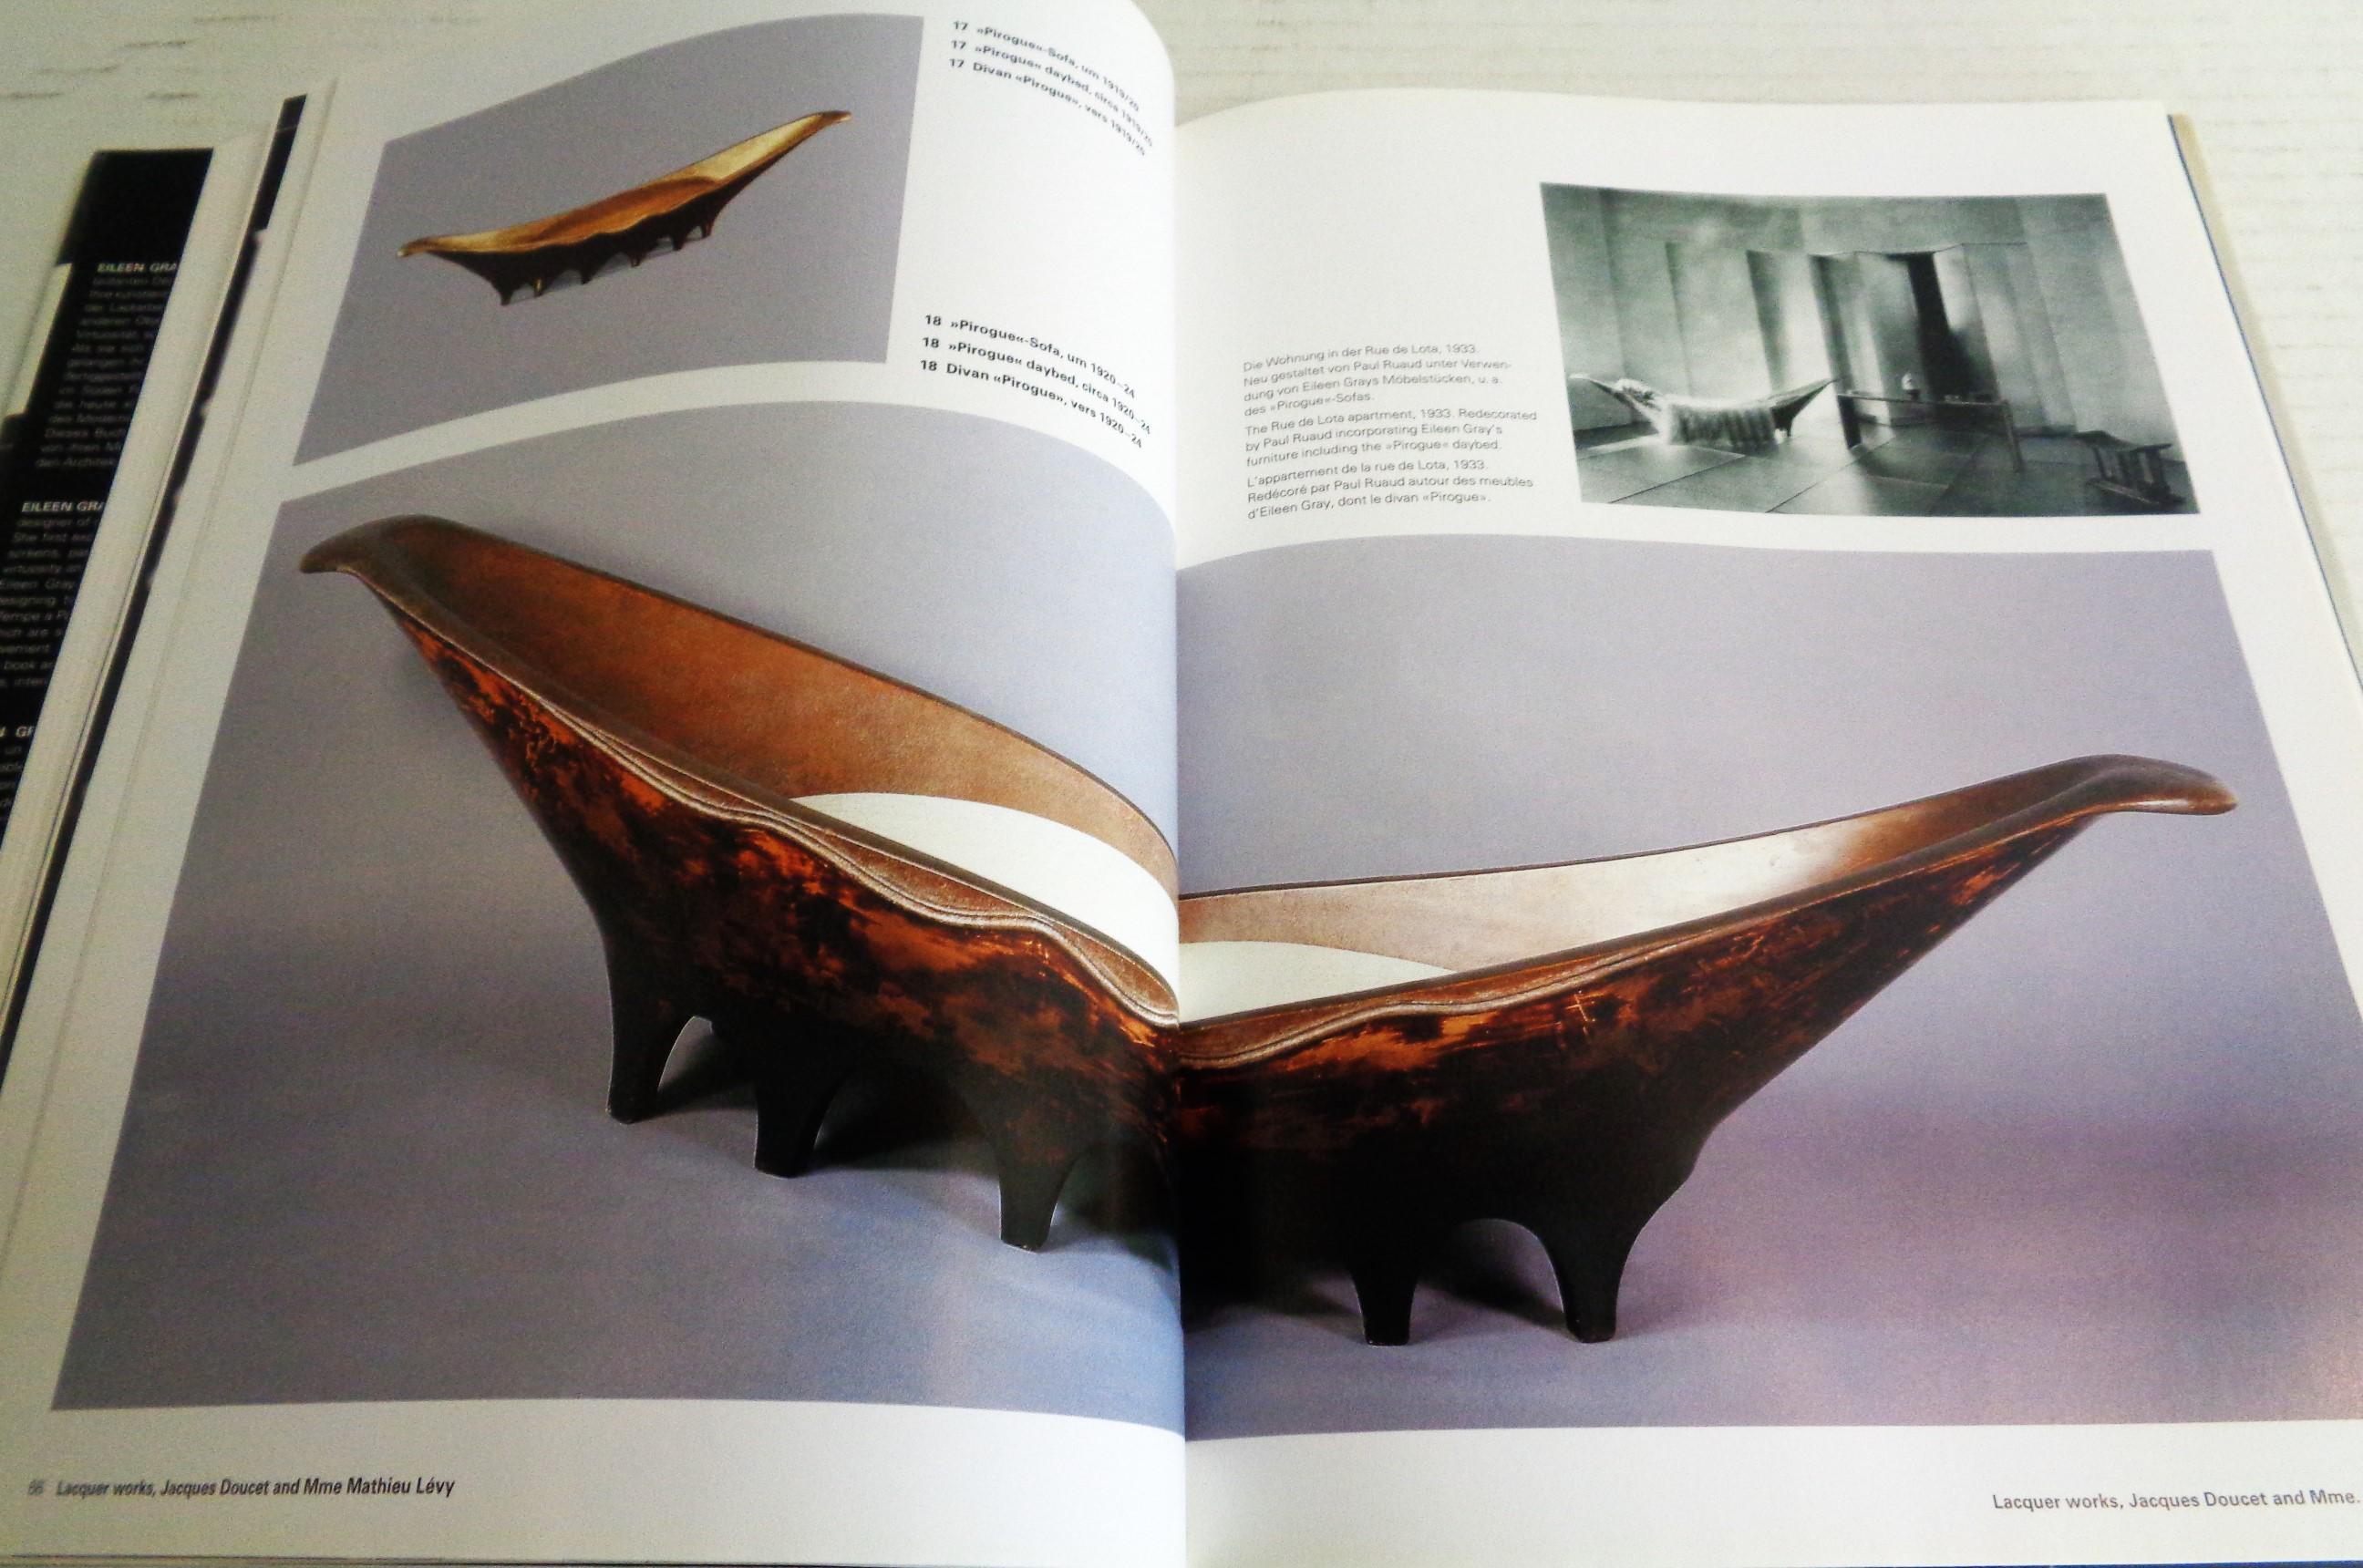 Eileen Gray - Design and Architecture - Garner, Philippe - 2006 Taschen 4